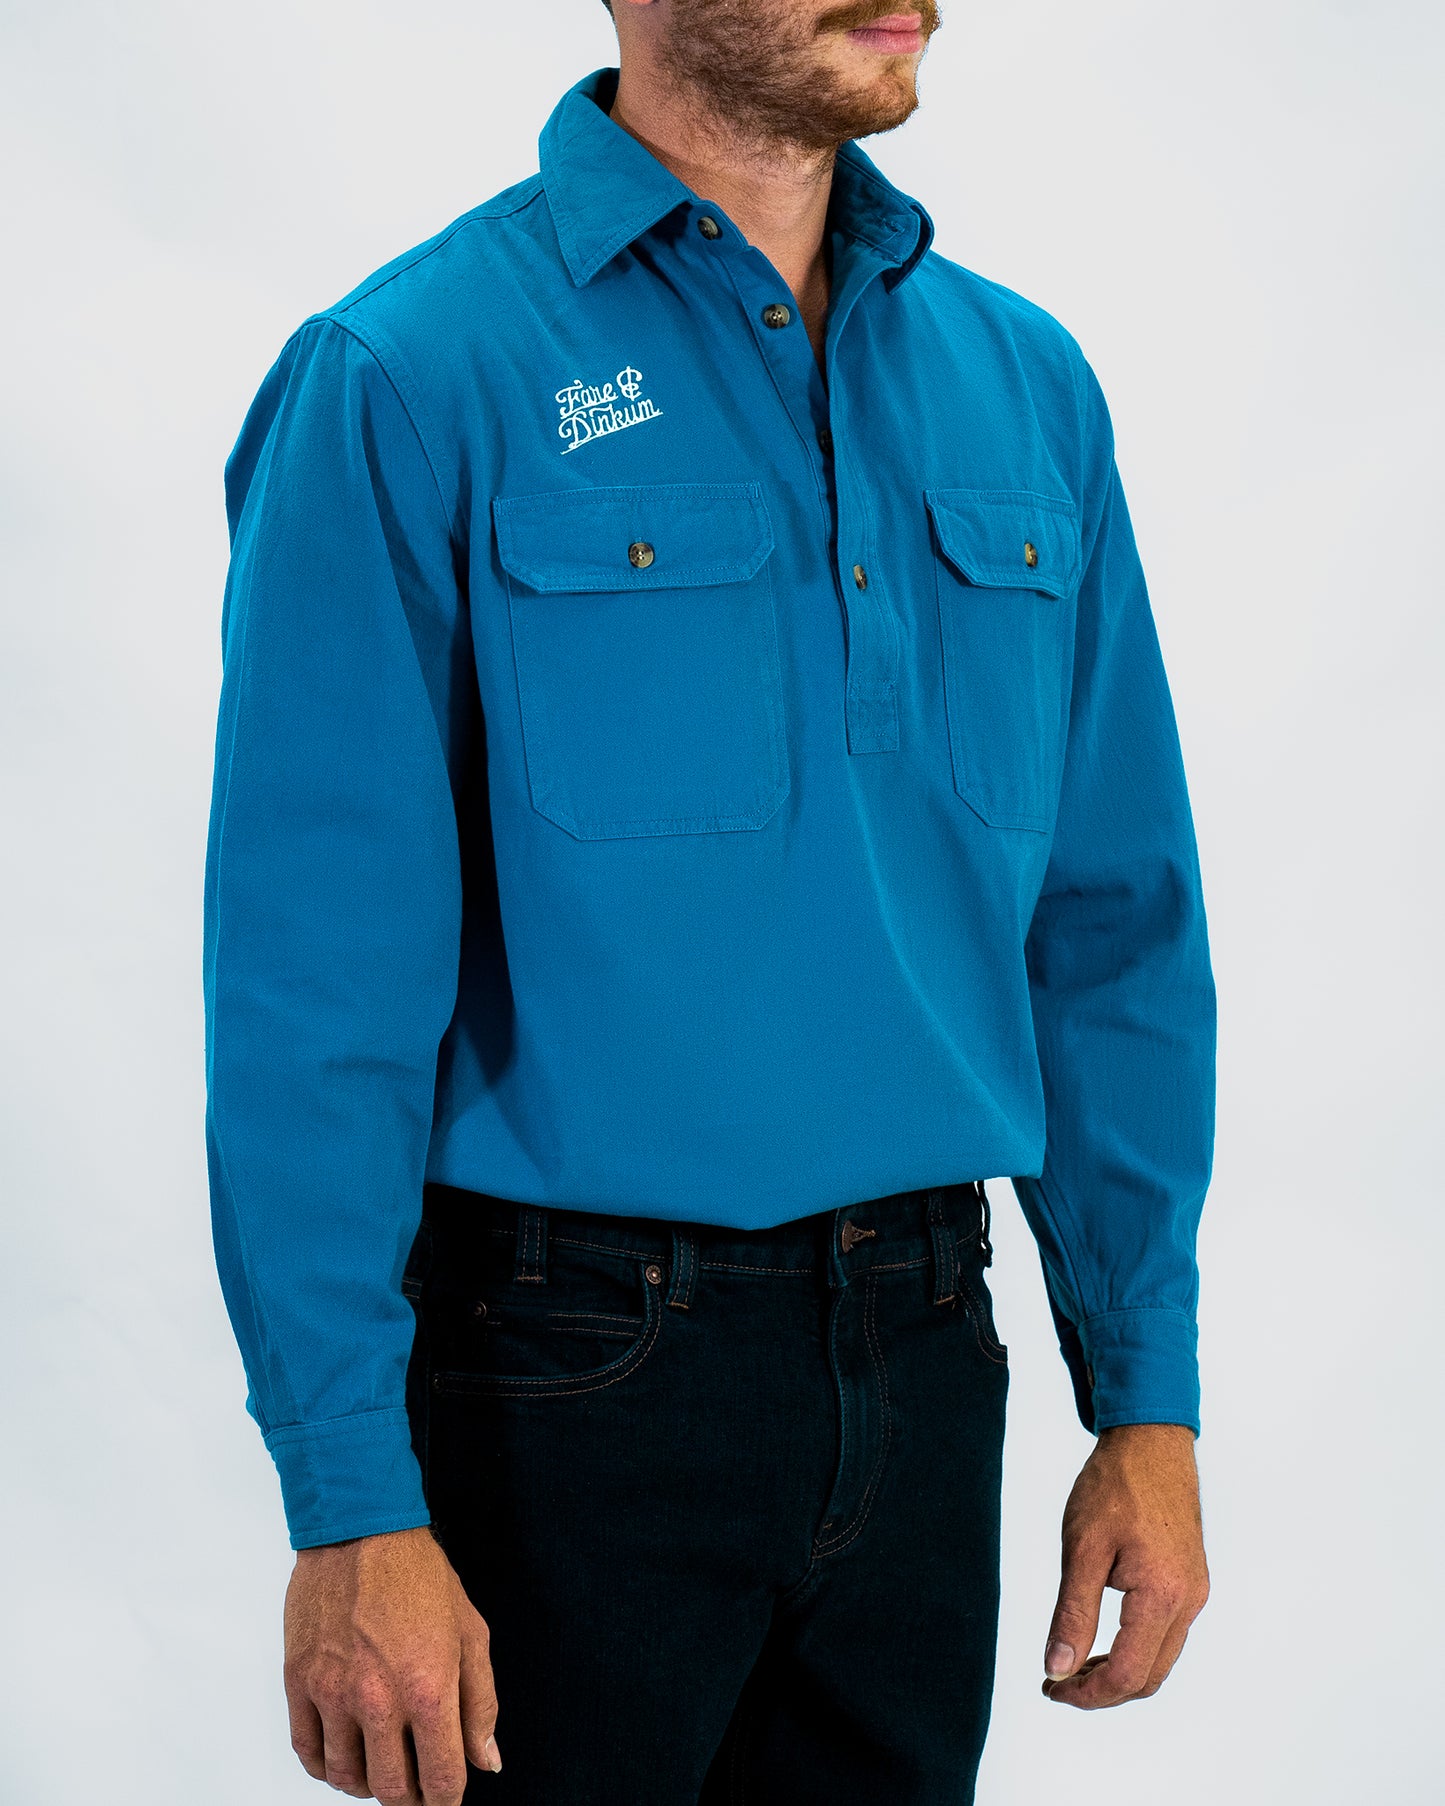 Mens Work Shirt Blue